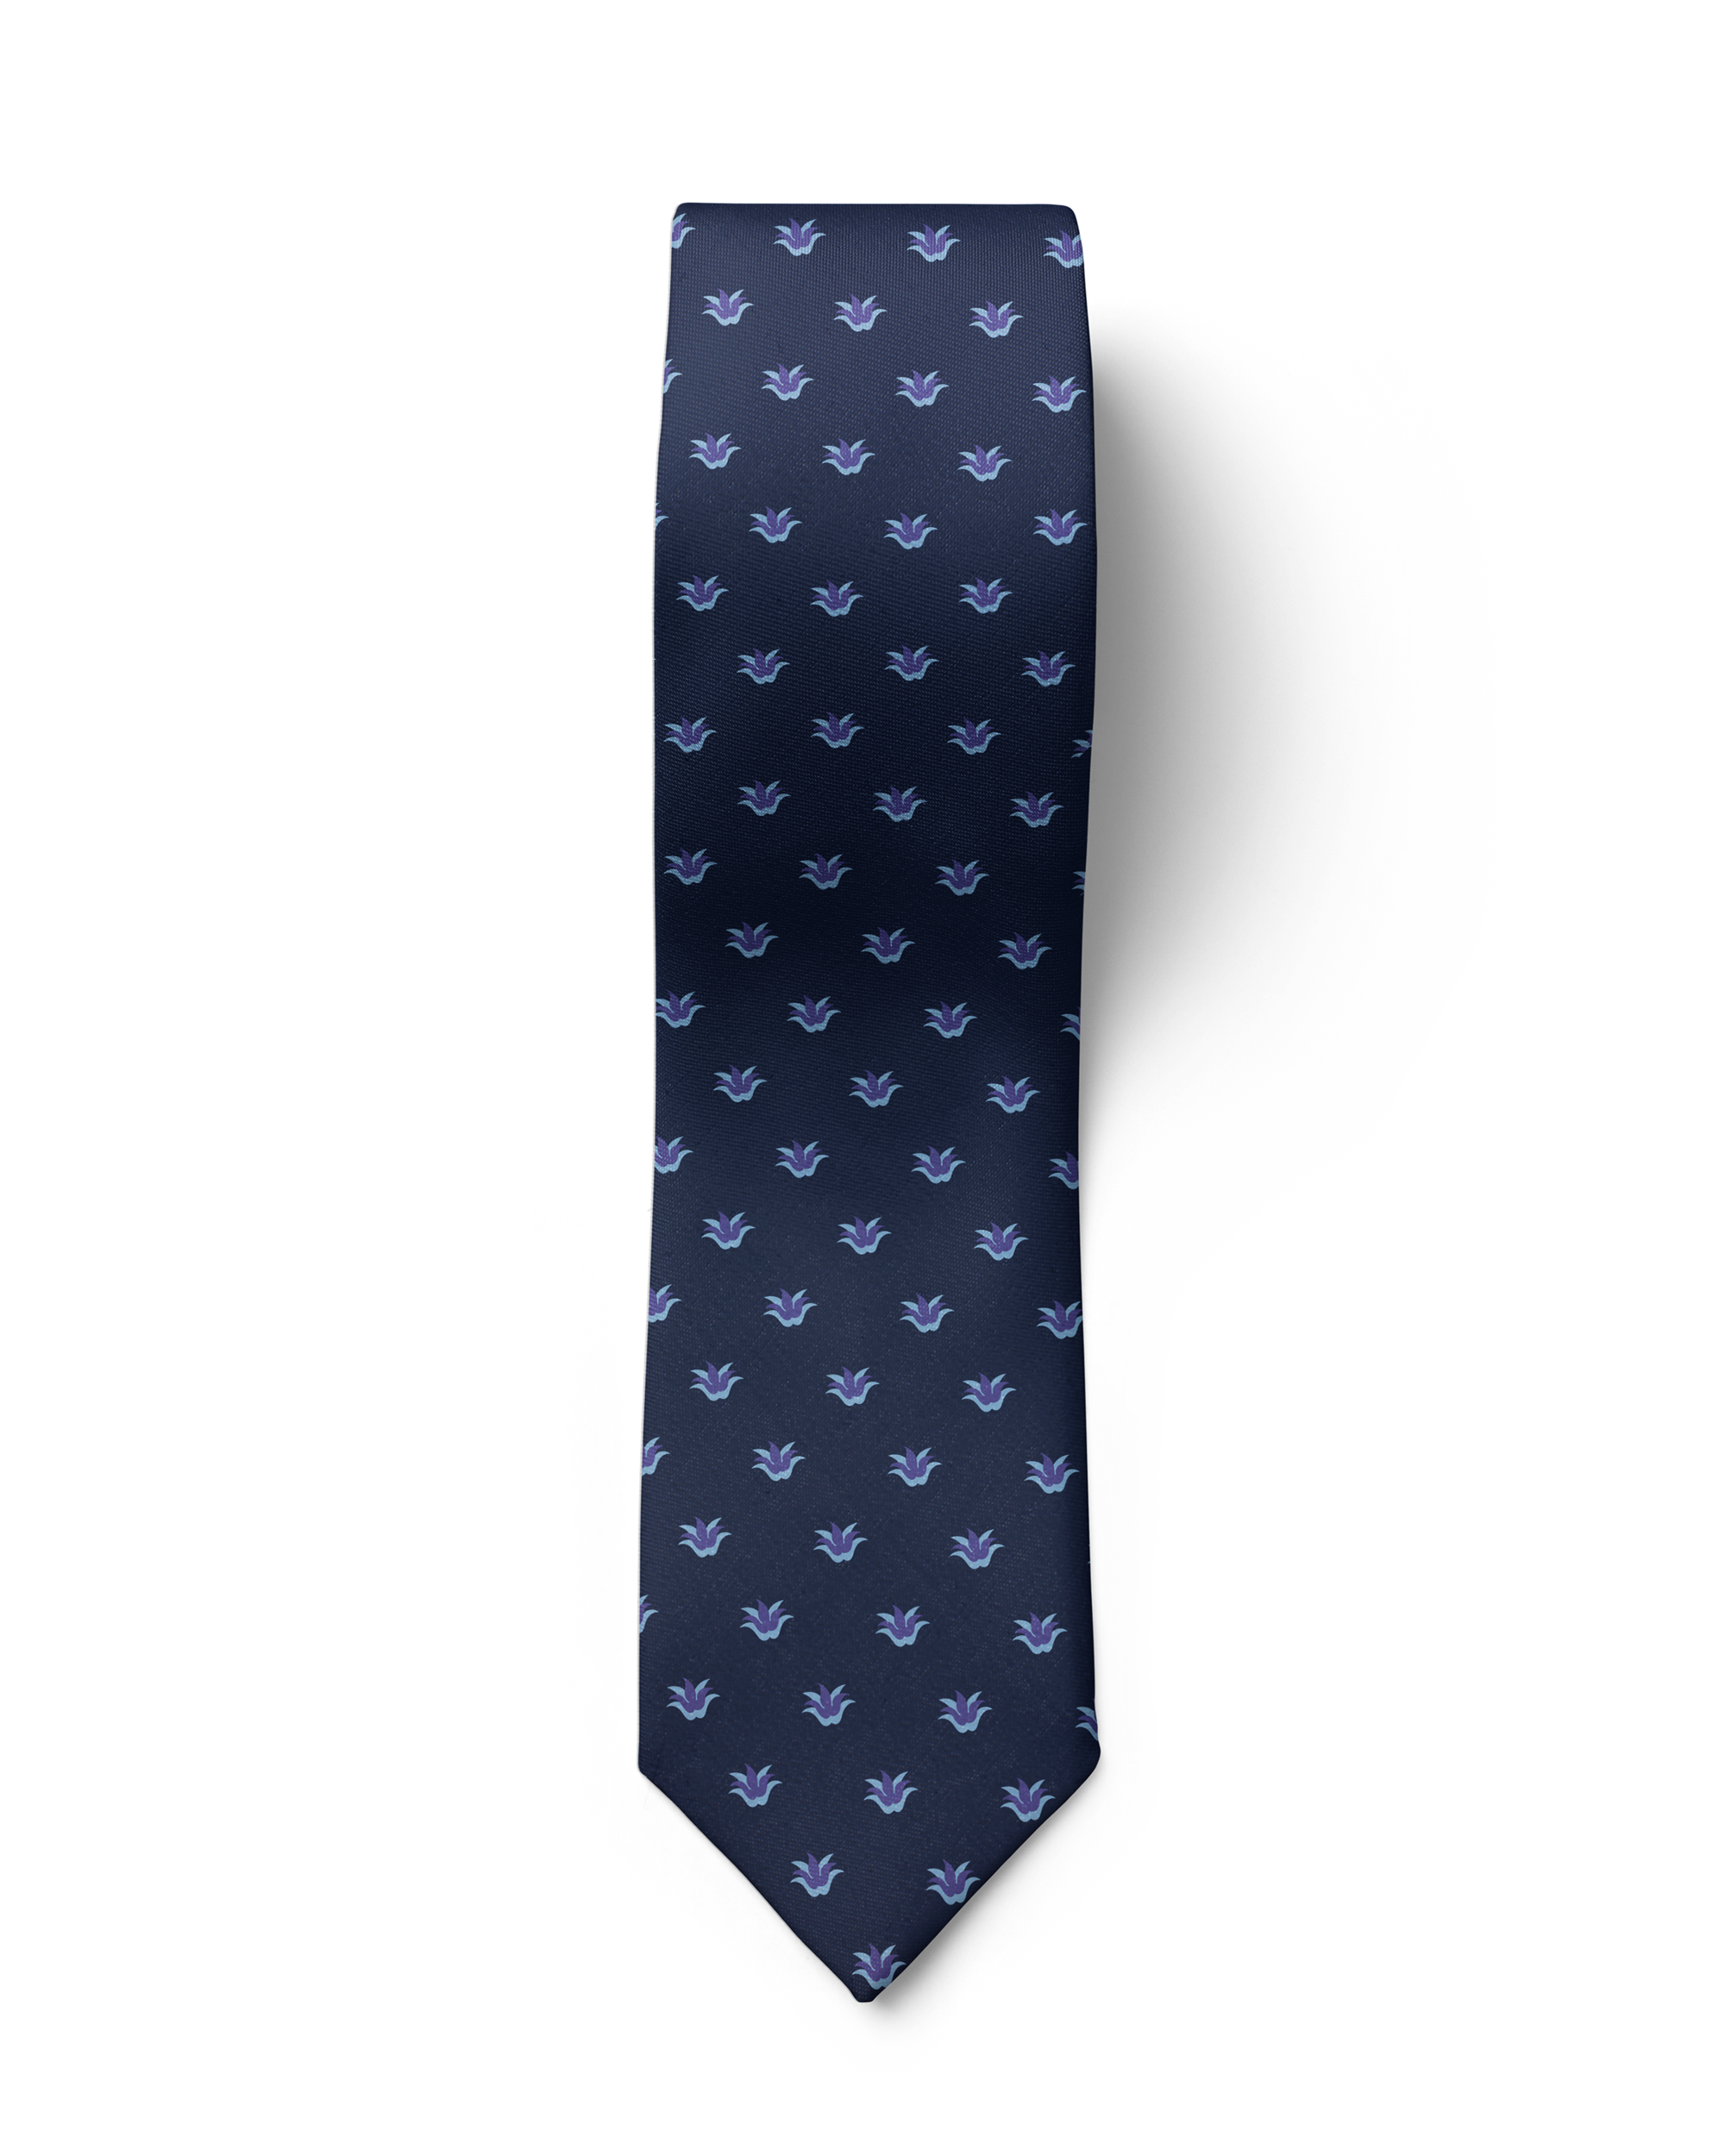 ჟაკარდის აბრეშუმის ჰალსტუხი „სამოთხის ჩიტი“ (ლურჯი)